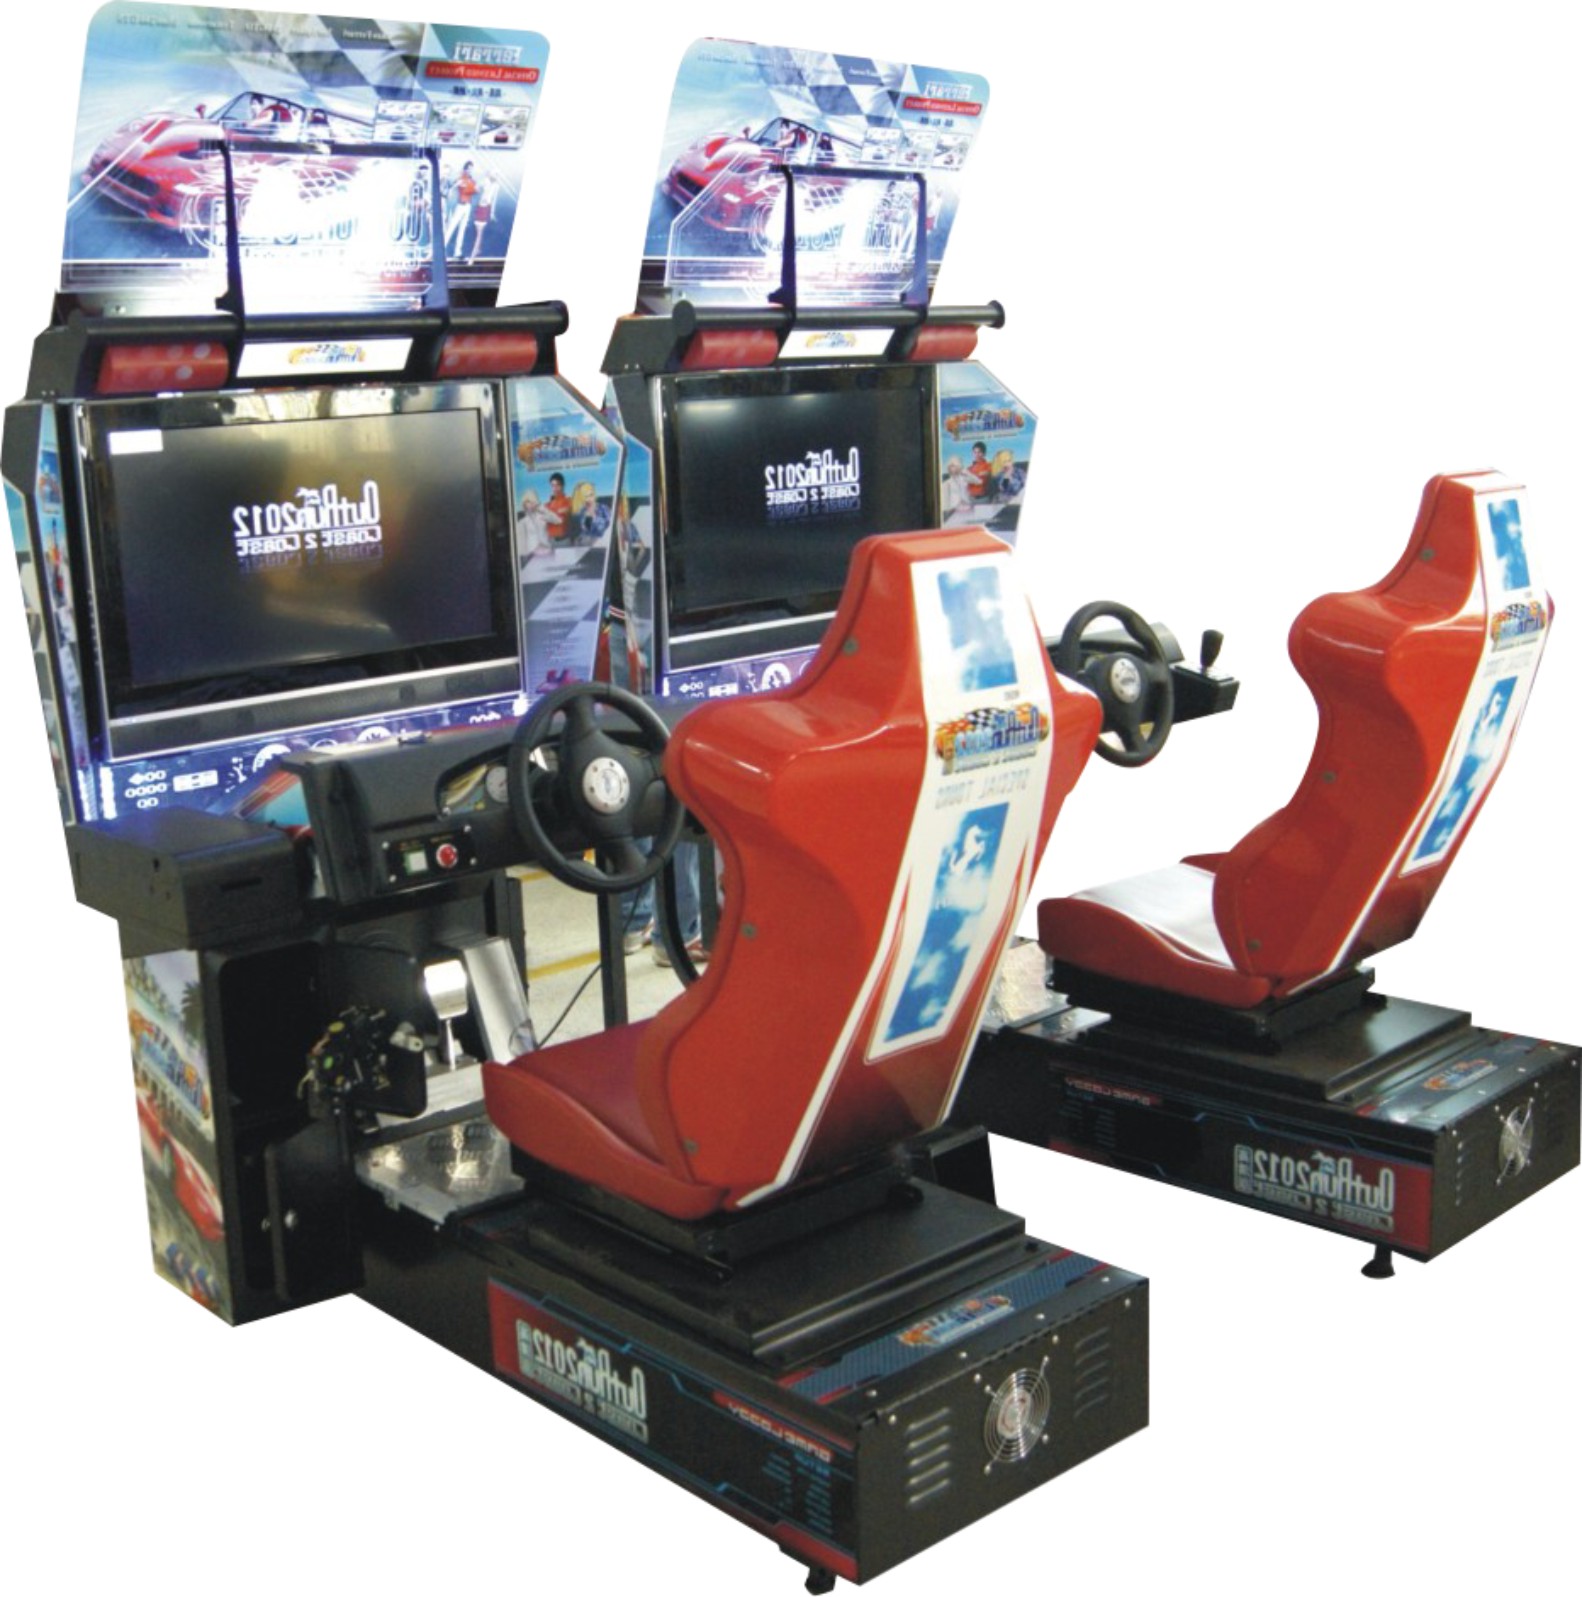 天子娱大型高清环游成人模拟赛车投币室内游戏机